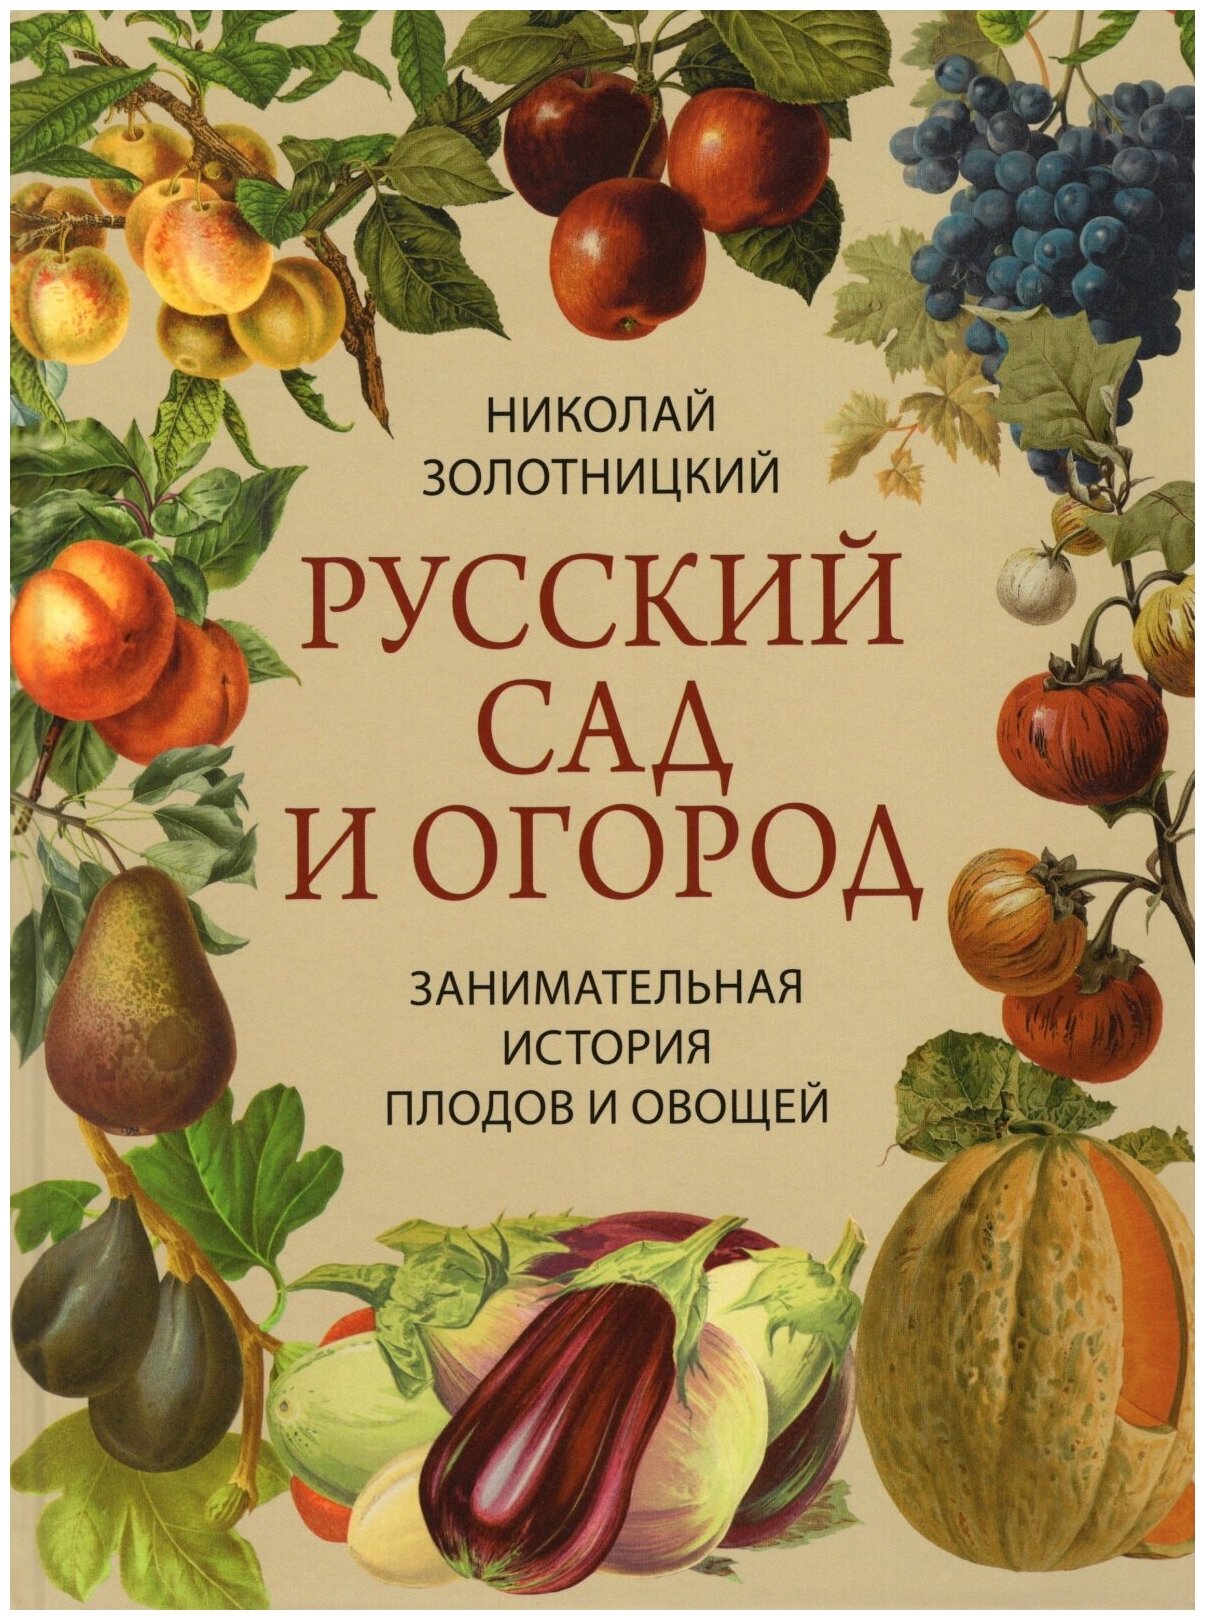 Русский сад и огород. Занимательная история плодов и овощей - фото №1